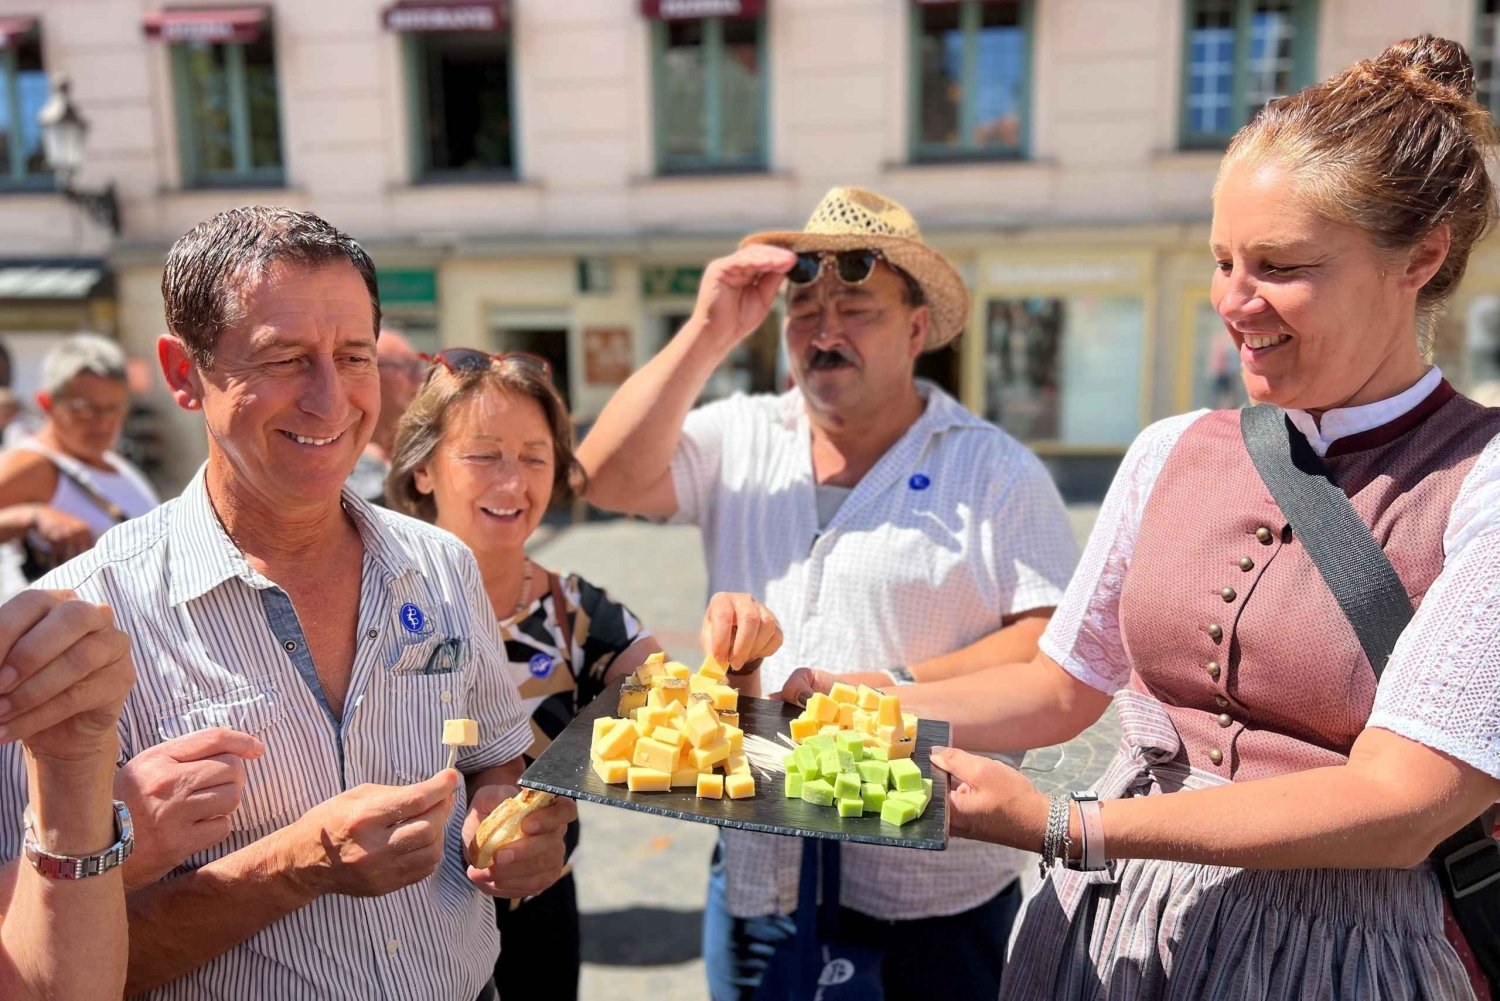 München: Viktualienmarkt Matprovningstur på tyska